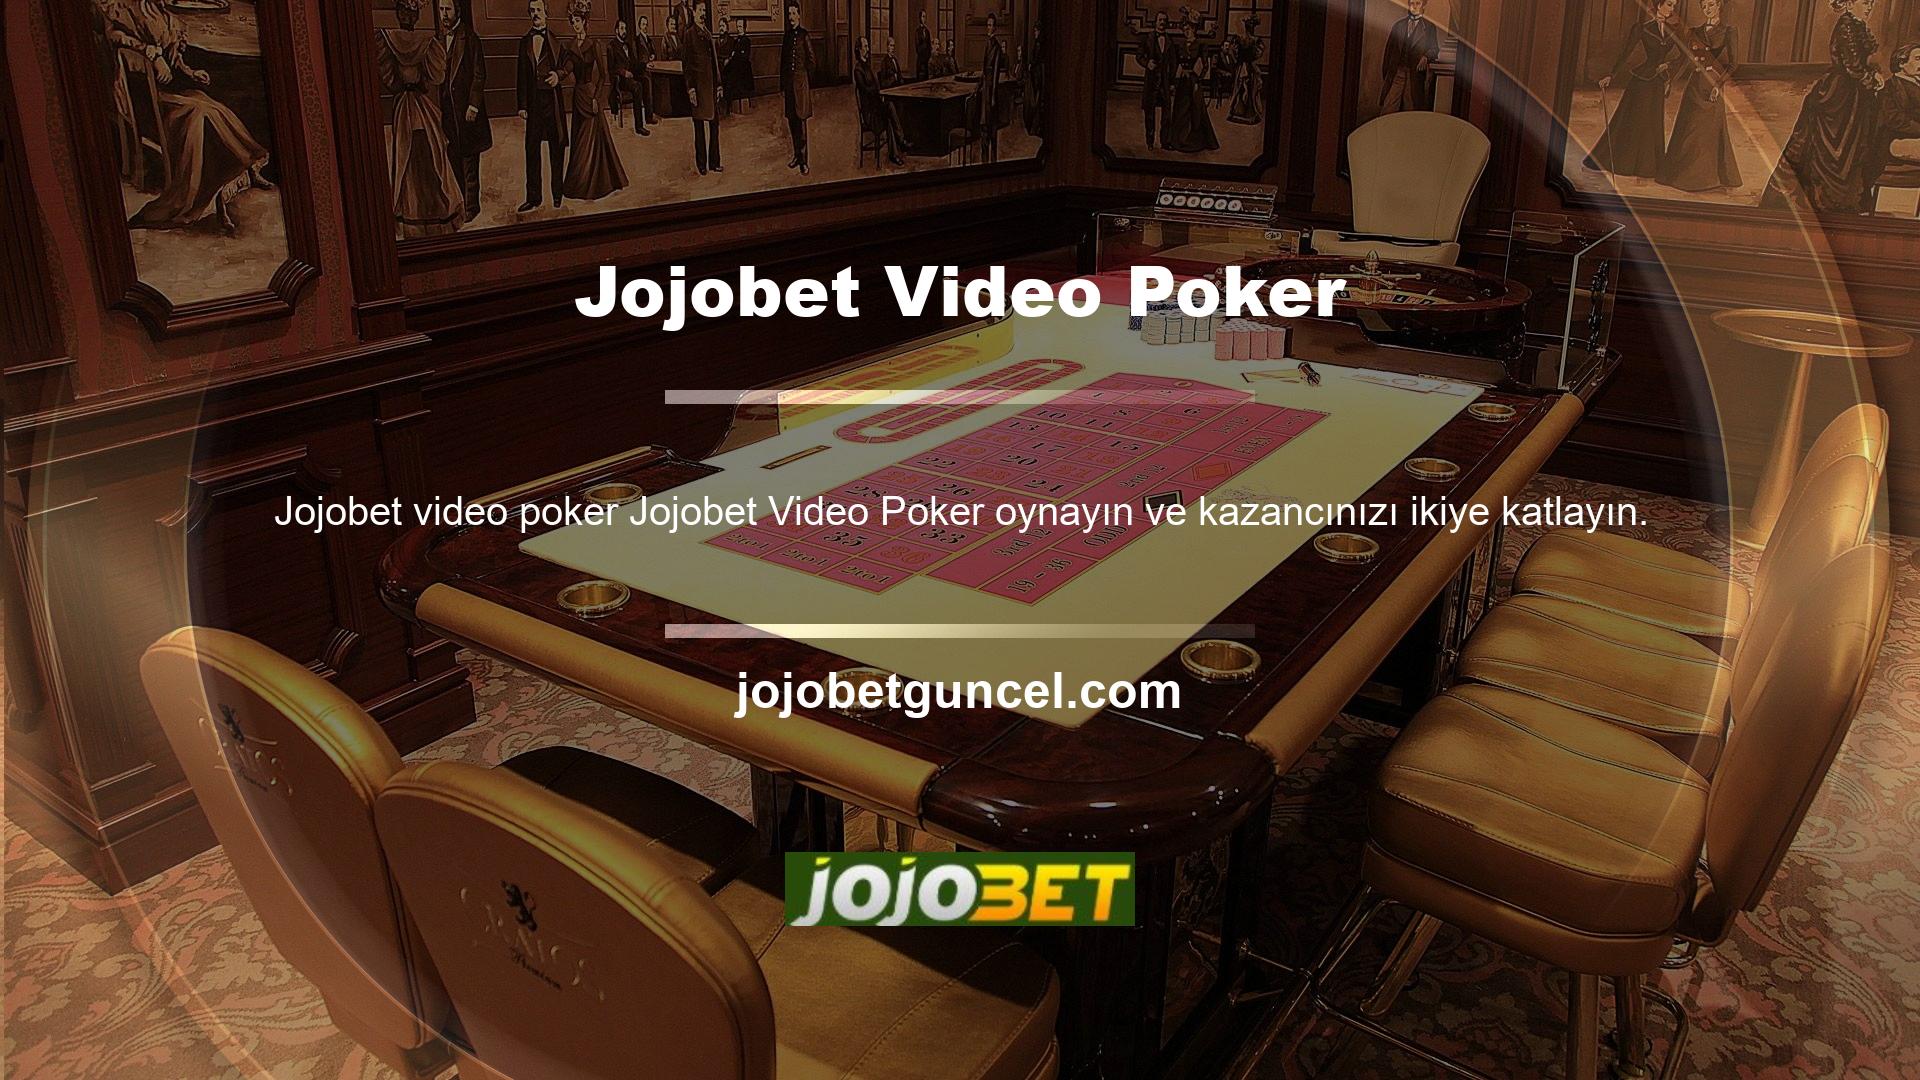 Jojobet bahis sitesi, sitenin sağladığı iletişim desteği ile oyuncuların oyun oynarken karşılaştıkları sorunlara çözüm sağlayan bir kuruluştur